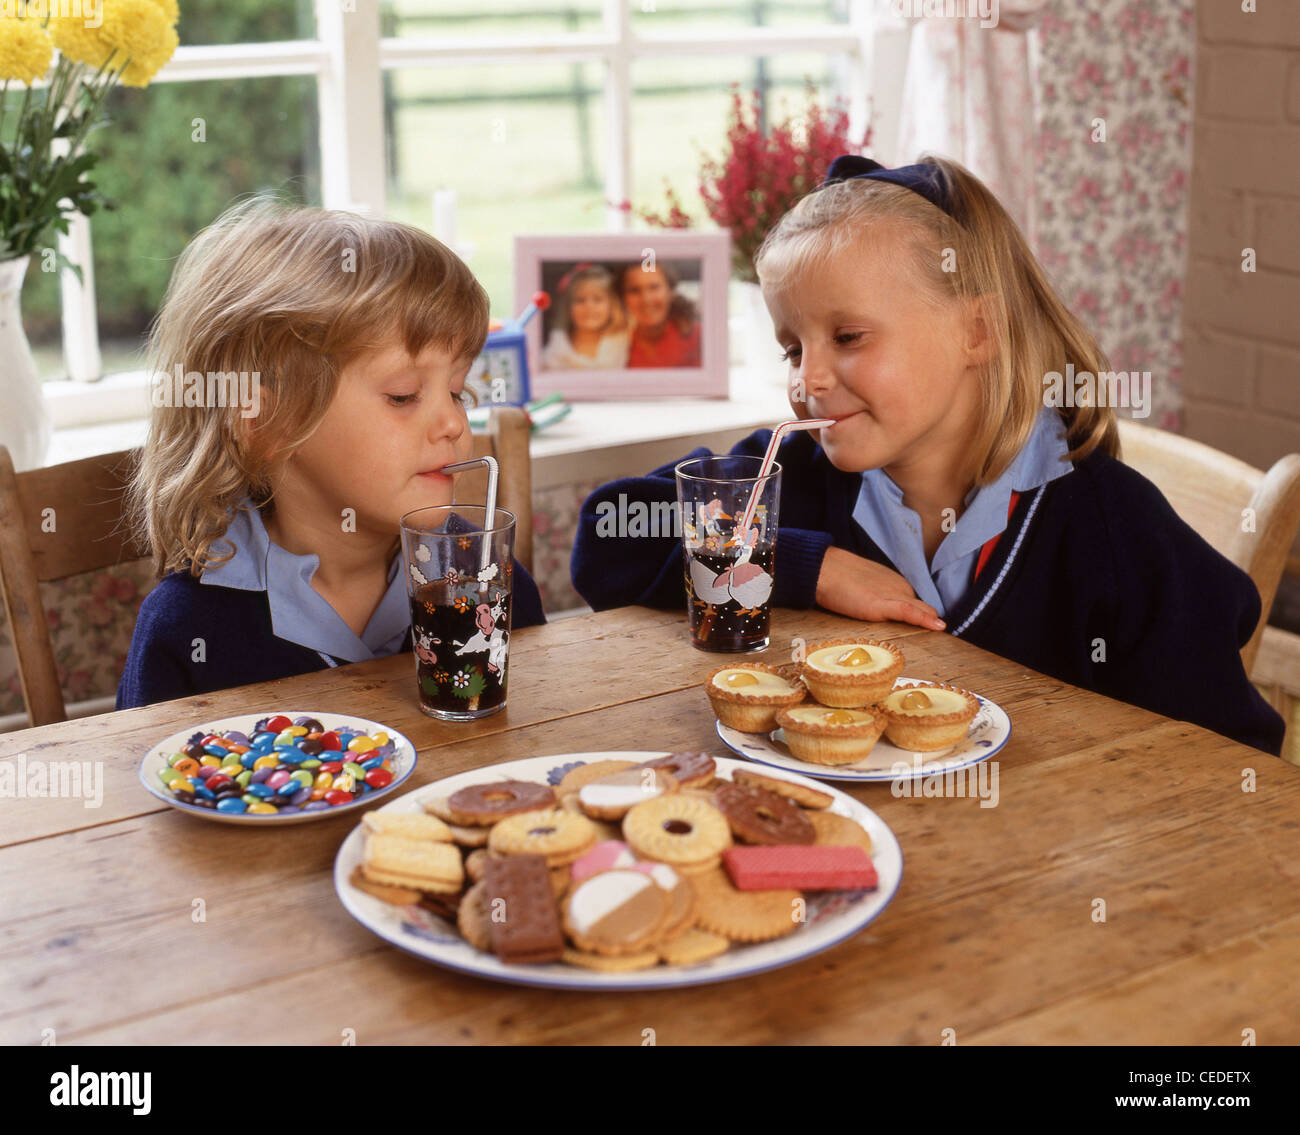 Schwestern, Kekse essen und trinken Softdrinks, Berkshire, England, Vereinigtes Königreich Stockfoto